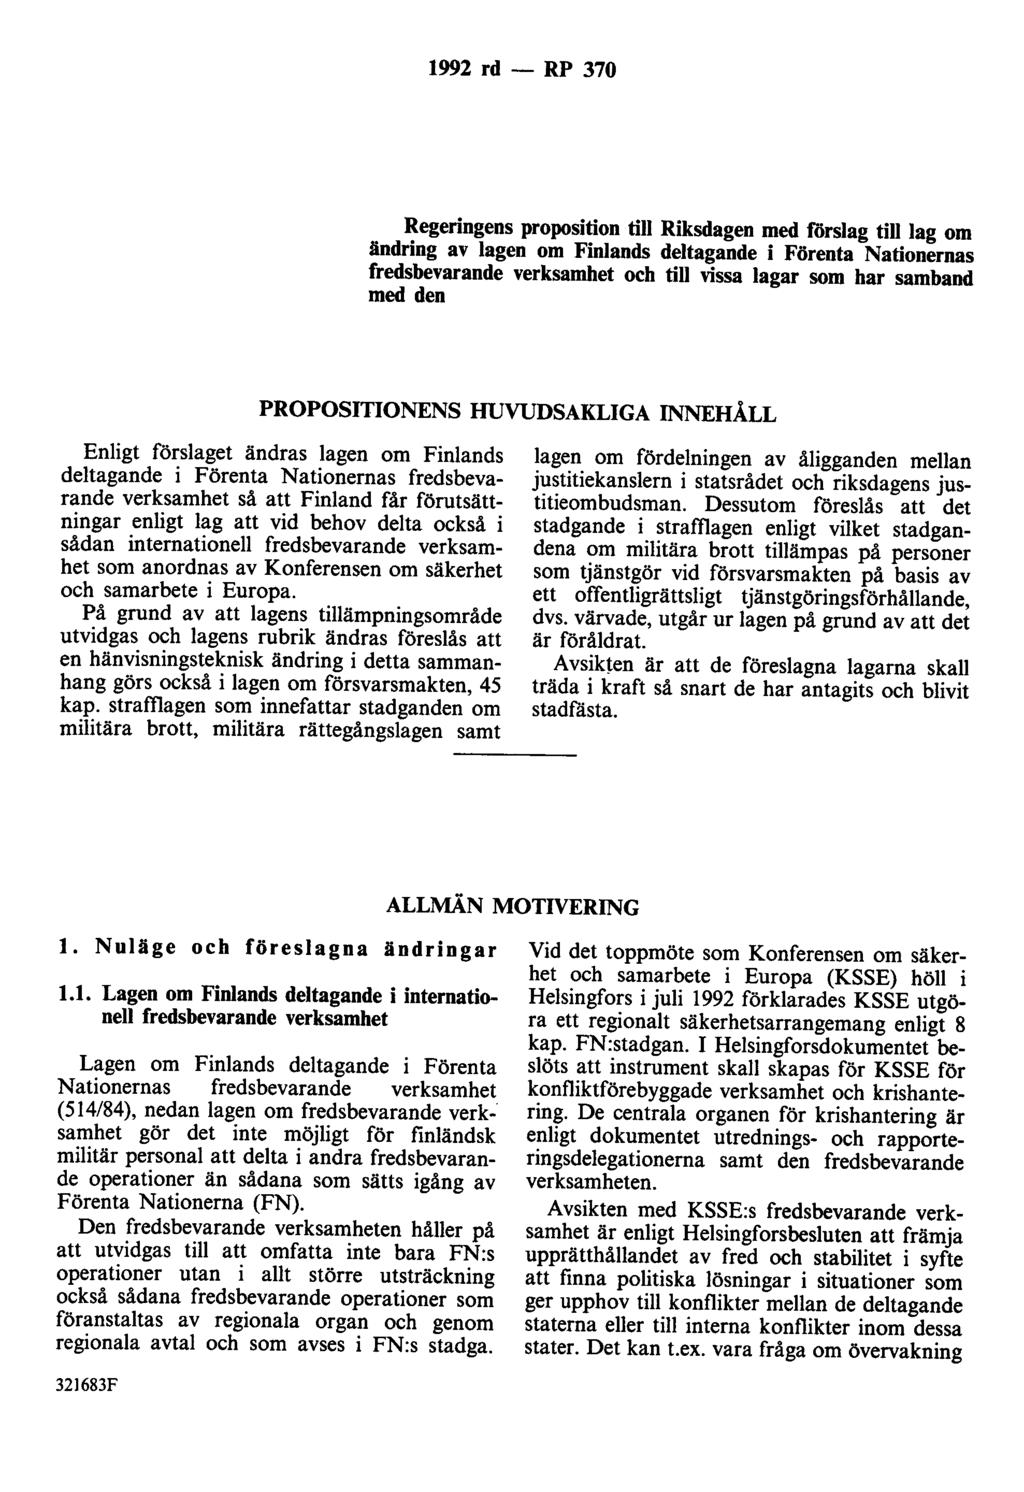 1992 rd - RP 370 Regeringens proposition till Riksdagen med förslag till lag om ändring av lagen om Finlands deltagande i Förenta Nationernas fredsbevarande verksamhet och till vissa lagar som har